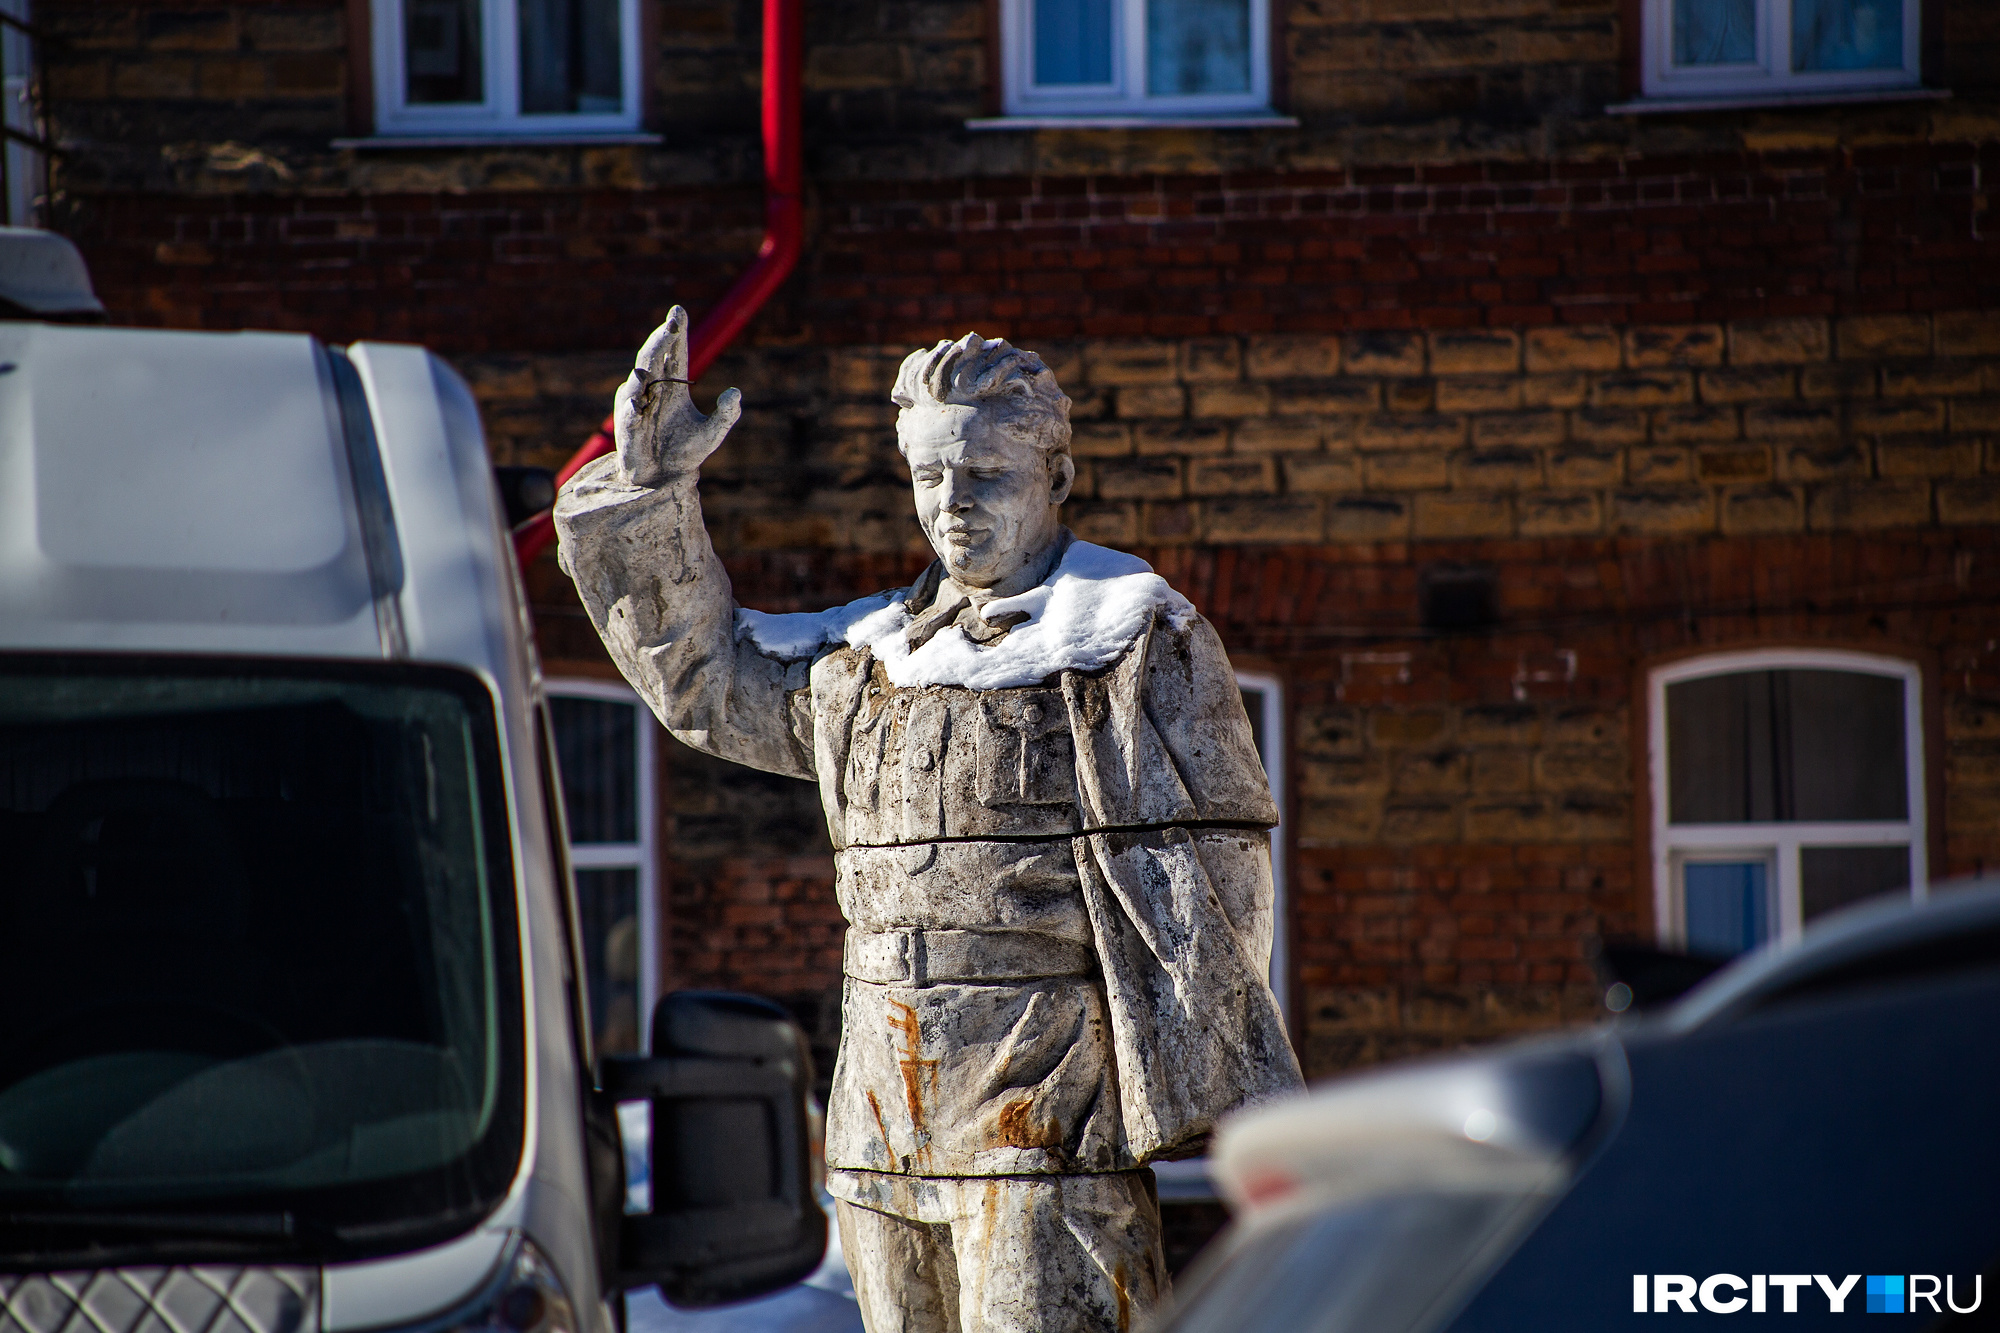 Статуя Кирова между машин